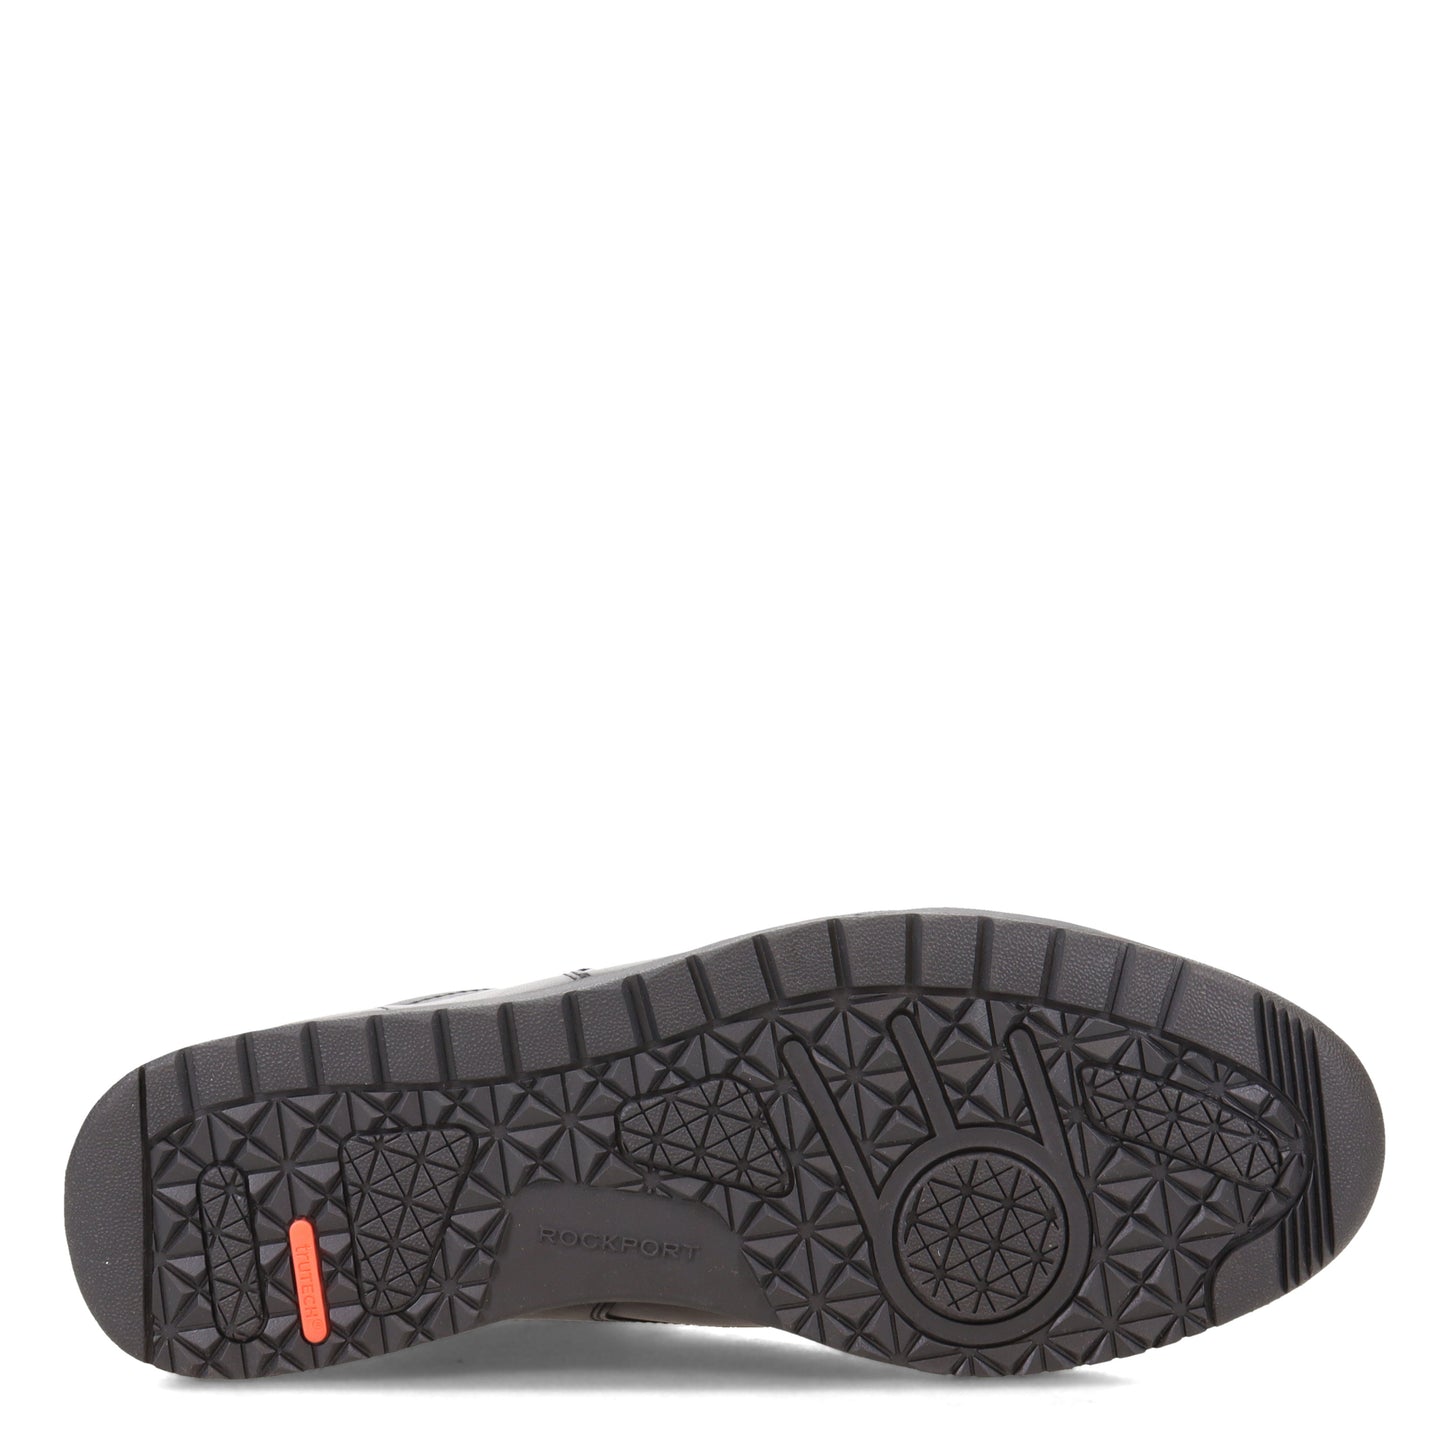 Peltz Shoes  Men's Rockport Bronson Plain Toe Lace-Up BLACK CI9558